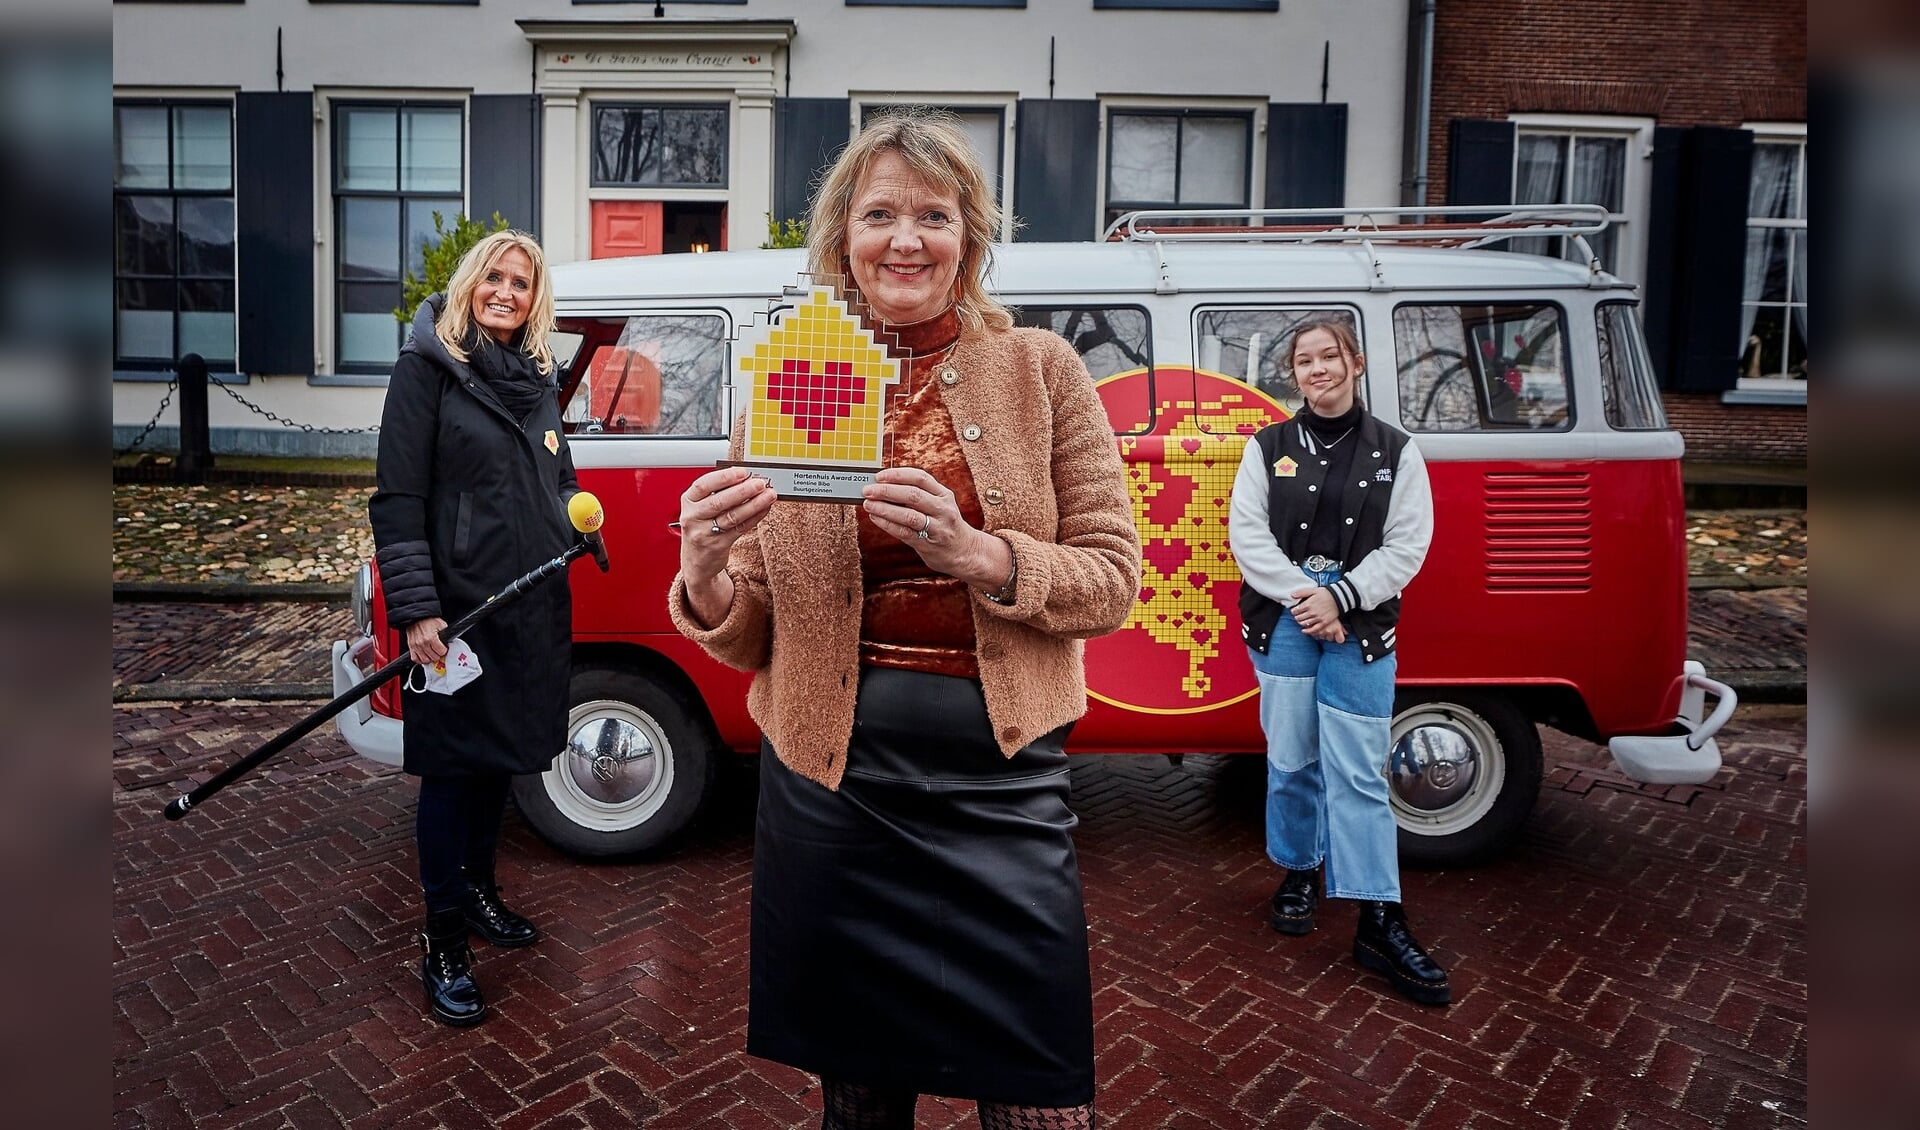 Oprichter van de Stichting Buurtgezinnen.nl Leontine Bibo krijgt de Hartenhuis Award uit handen van Natasja Froger en Unforgetable Evi